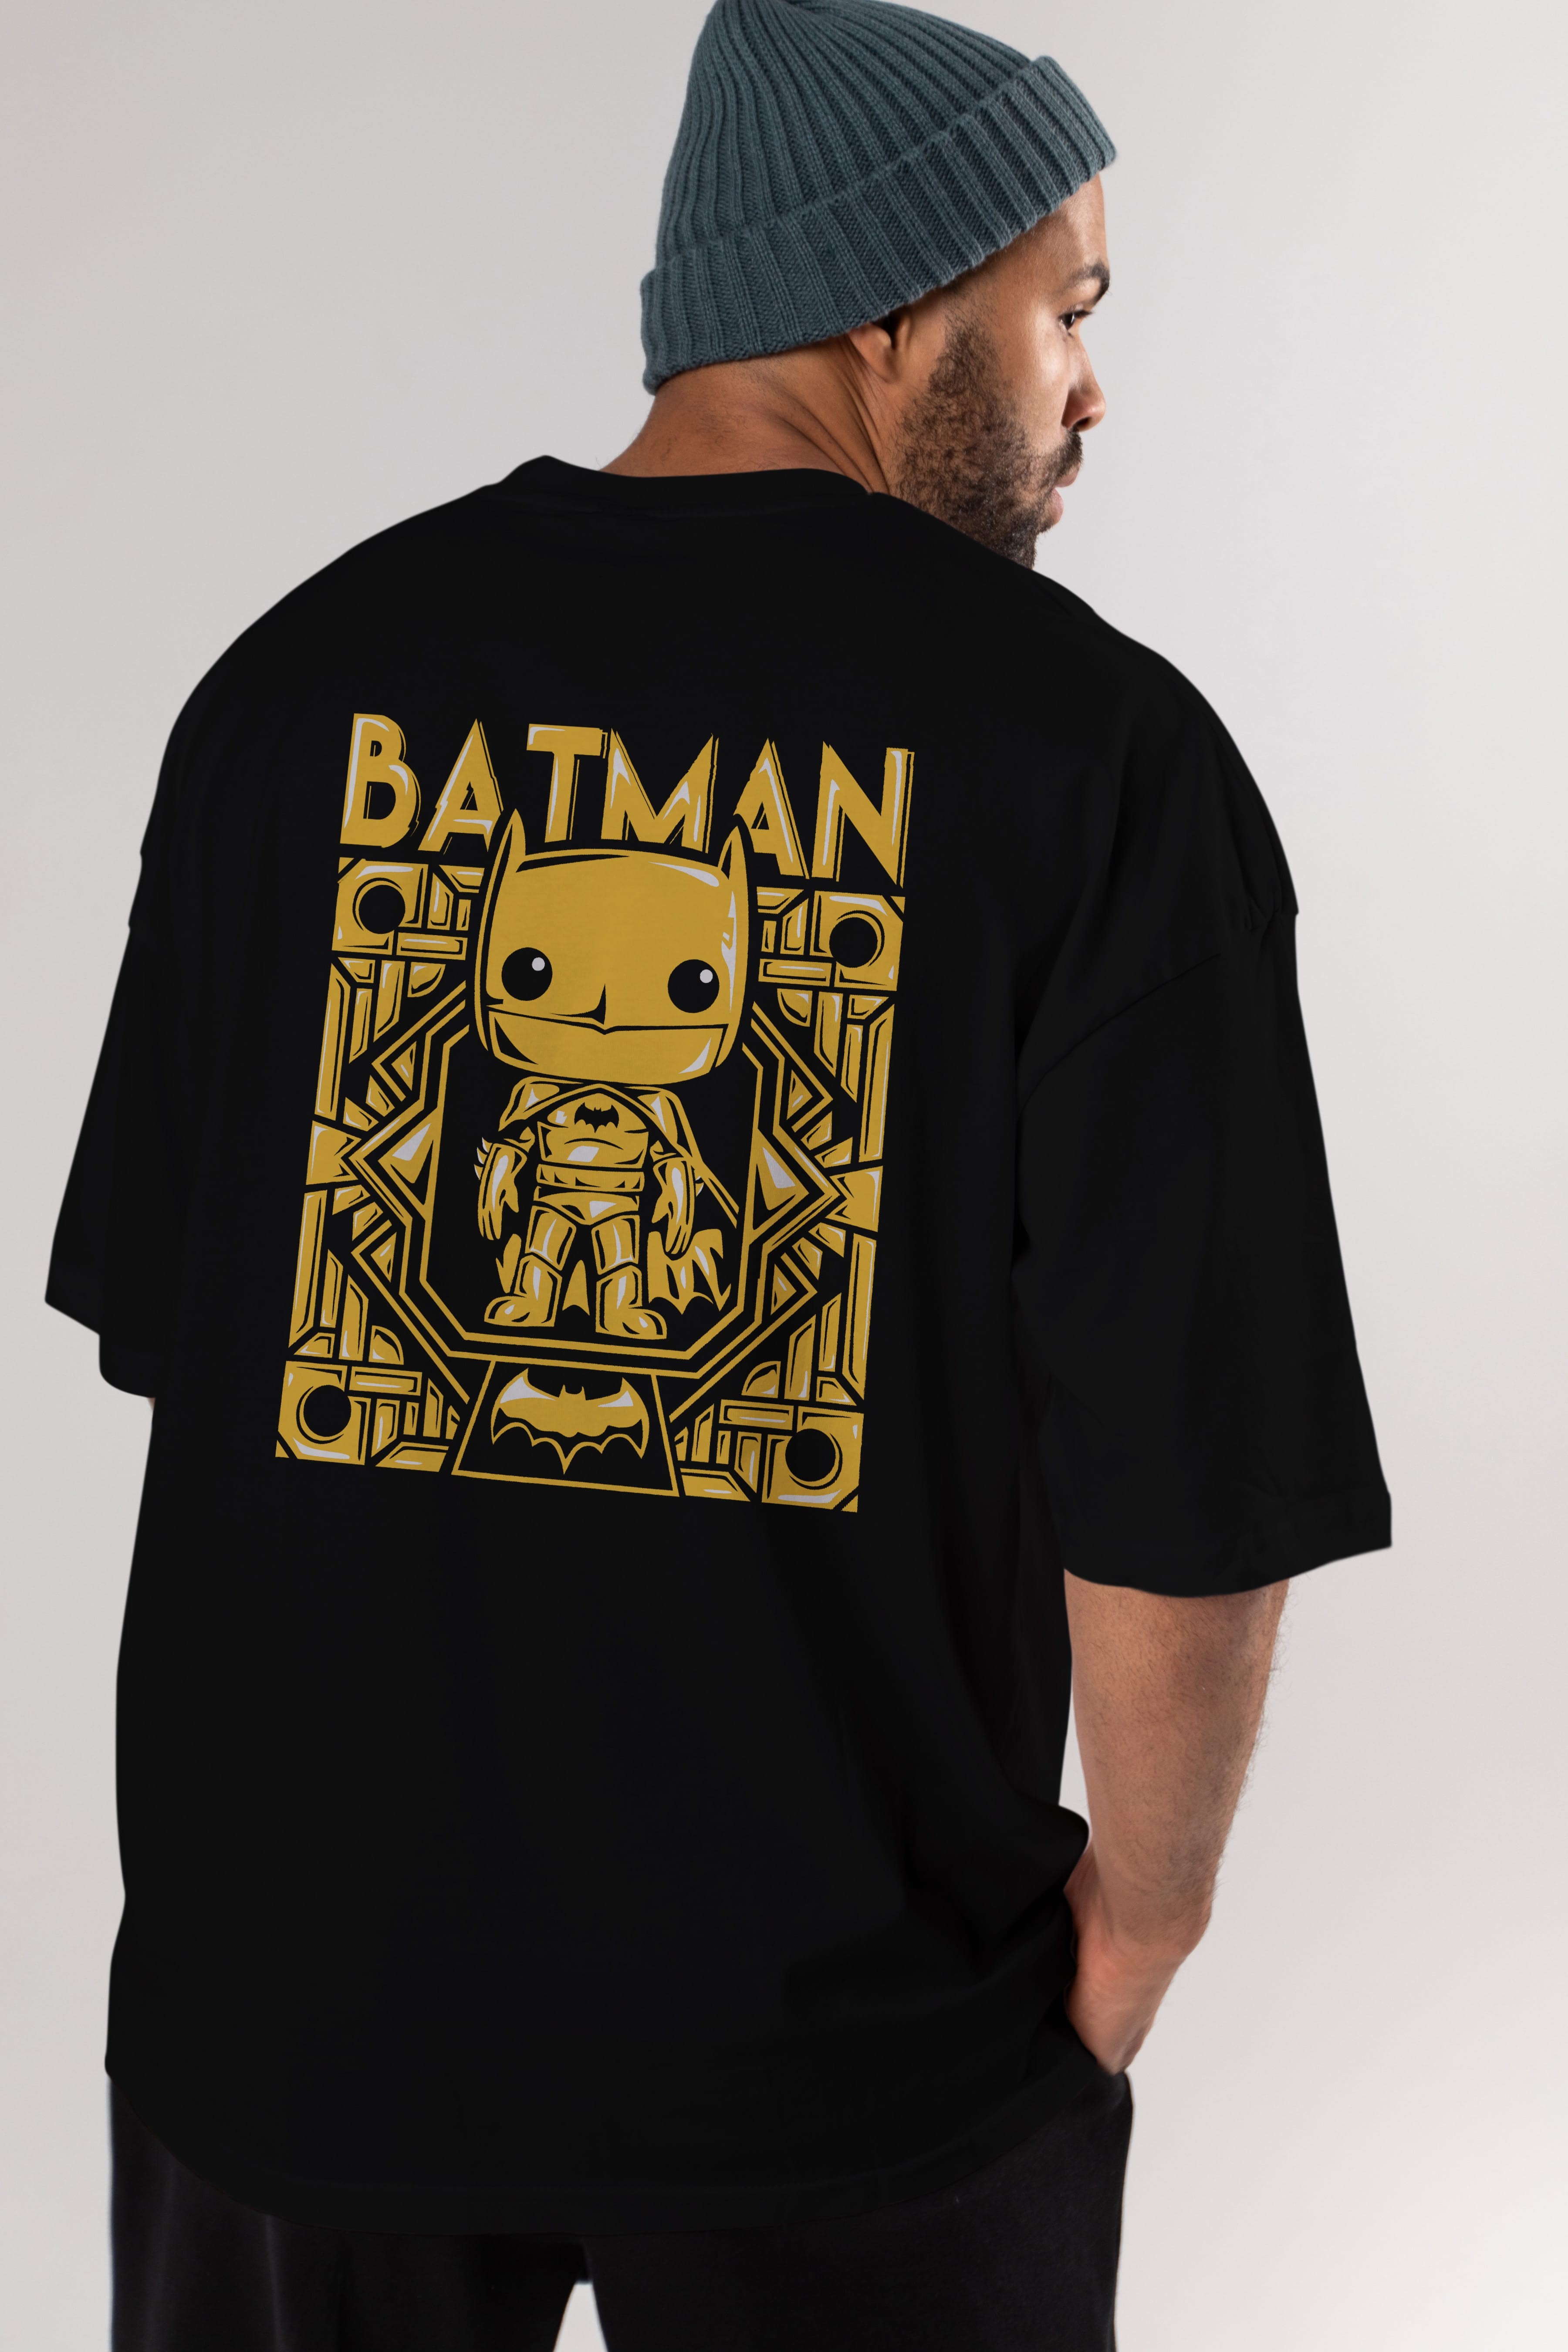 Batman (9) Arka Baskılı Oversize t-shirt Erkek Kadın Unisex %100 Pamuk Bisiklet Yaka tişort